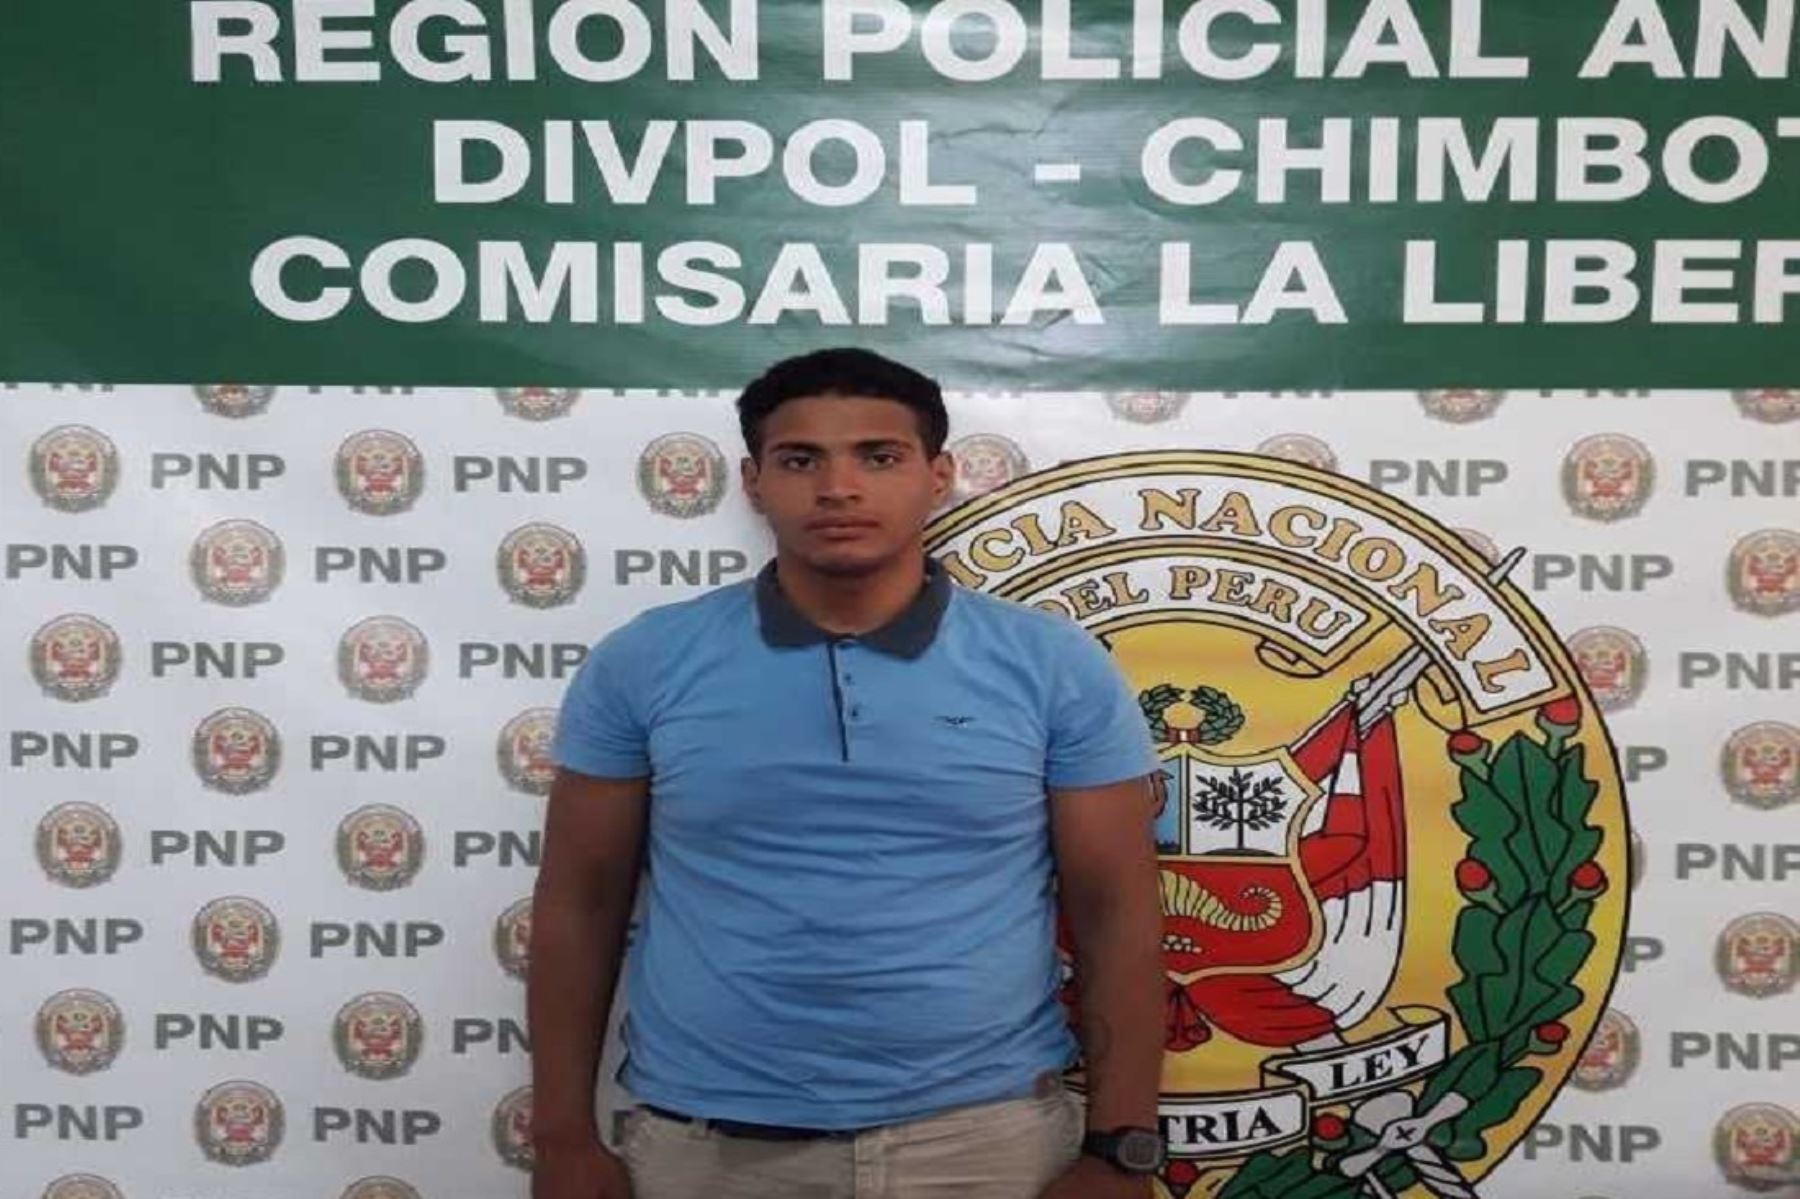 El joven venezolano quedó en calidad de detenido en la Comisaría  La Libertad de Chimbote..